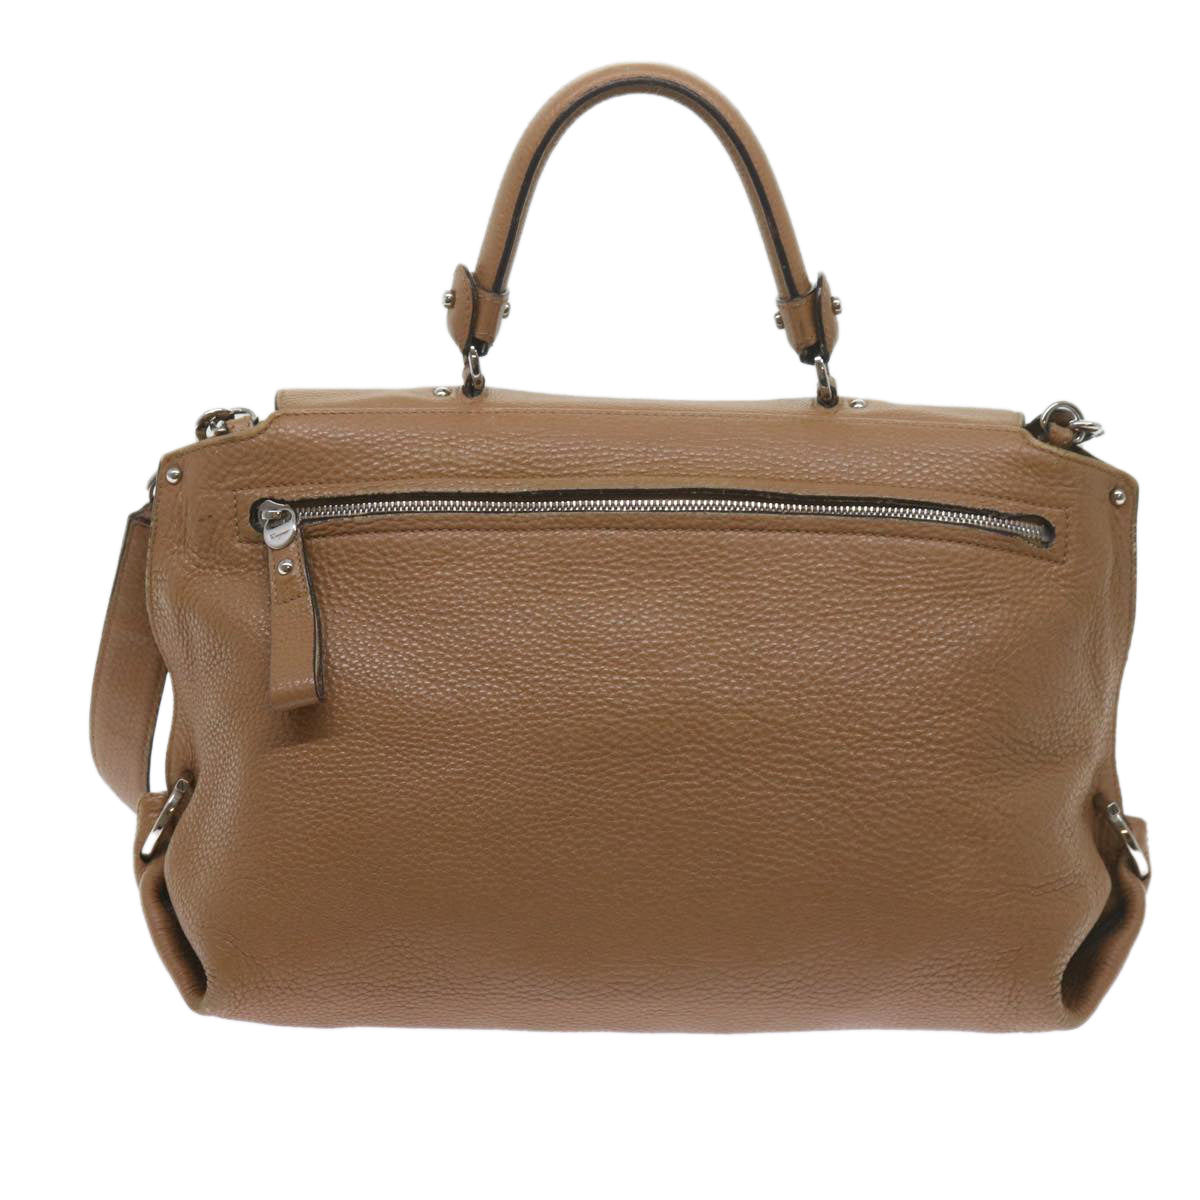 Salvatore Ferragamo Gancini Hand Bag Leather Beige Auth 60695 - 0